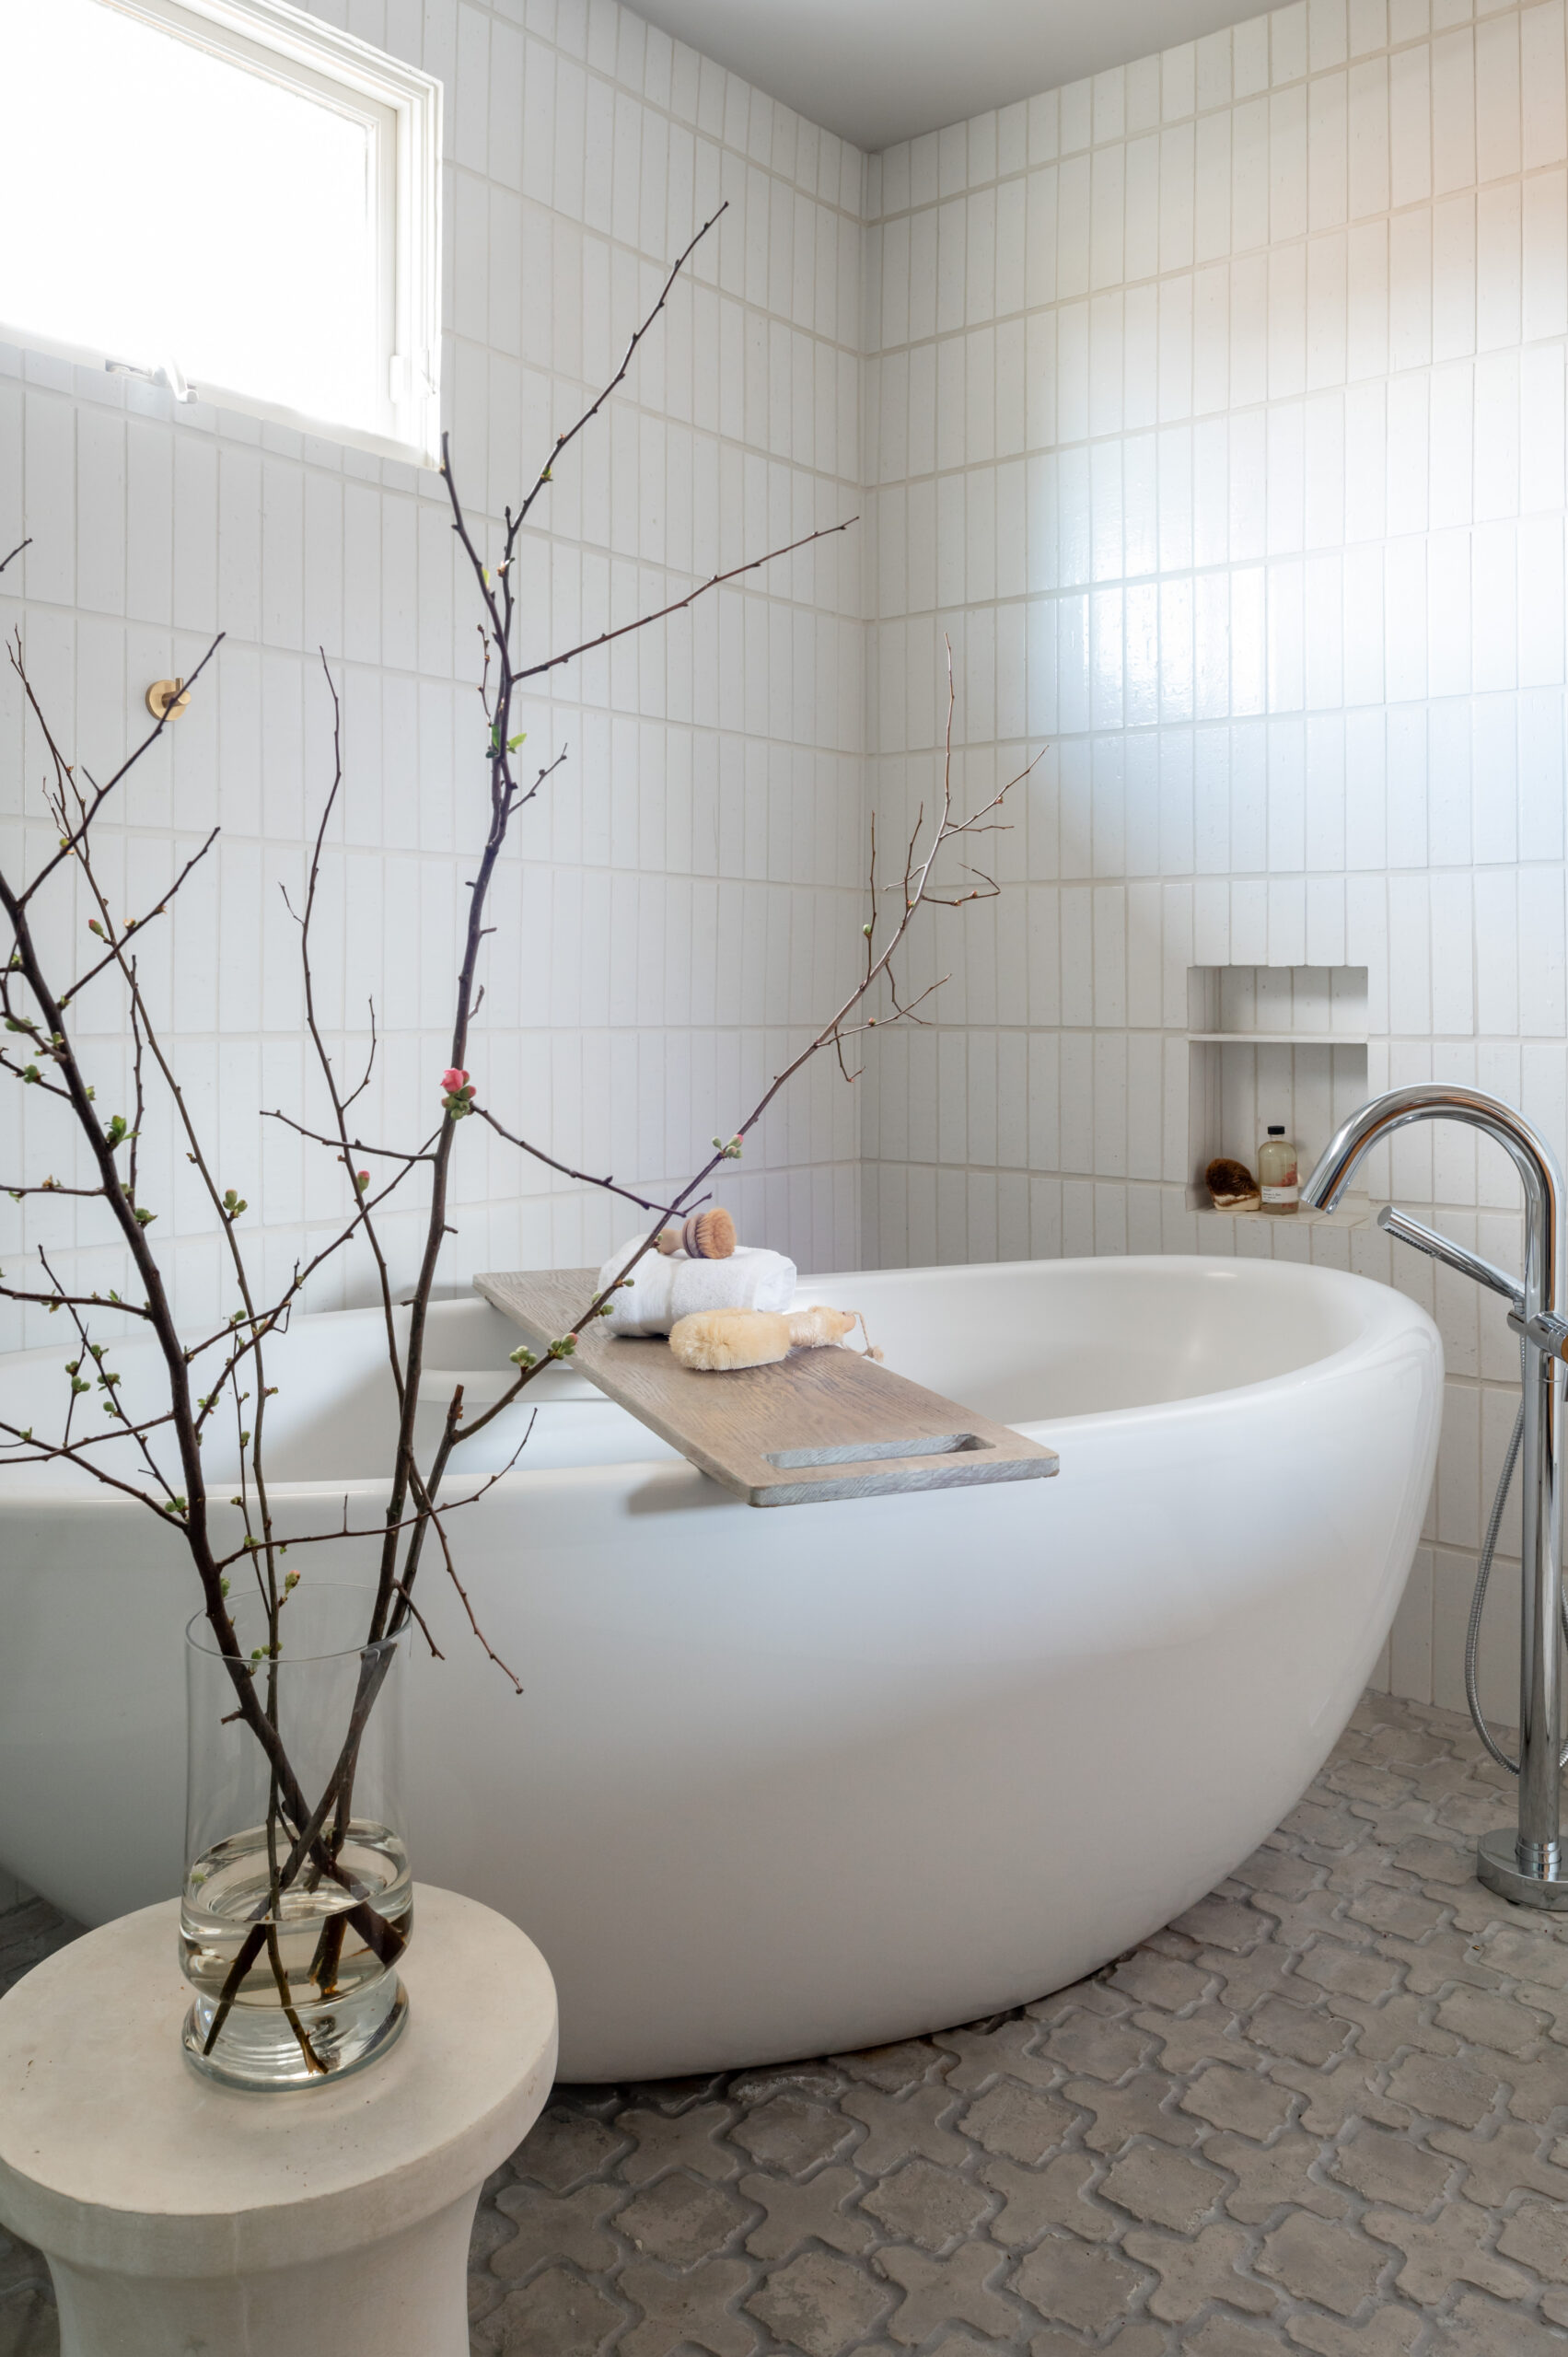 Stunning white bathtub in a luxury tiled bathroom